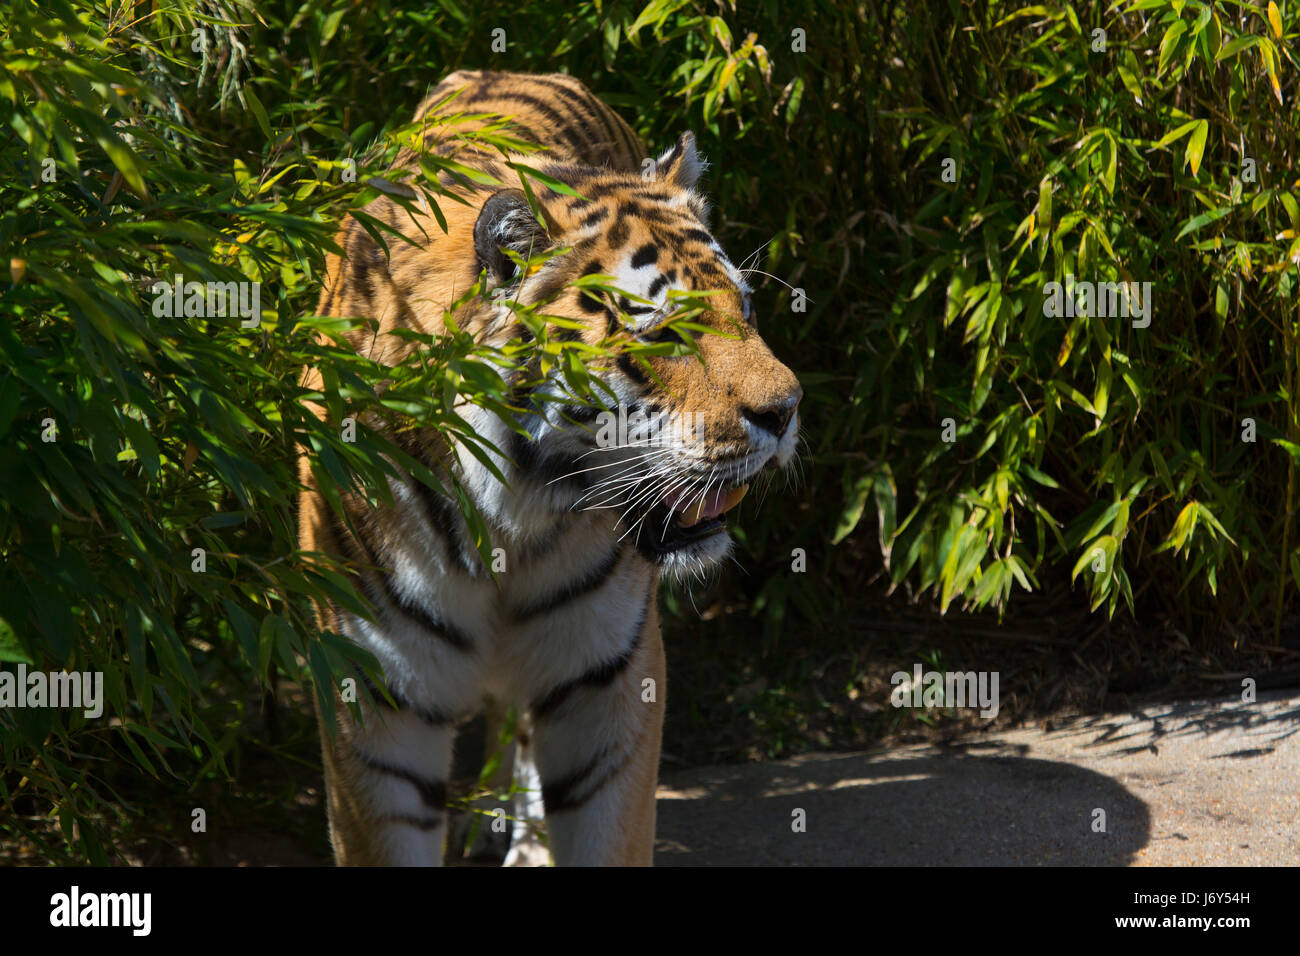 A samur tiger aggirava nelle boccole, mostrando un efficace camouflage Foto Stock